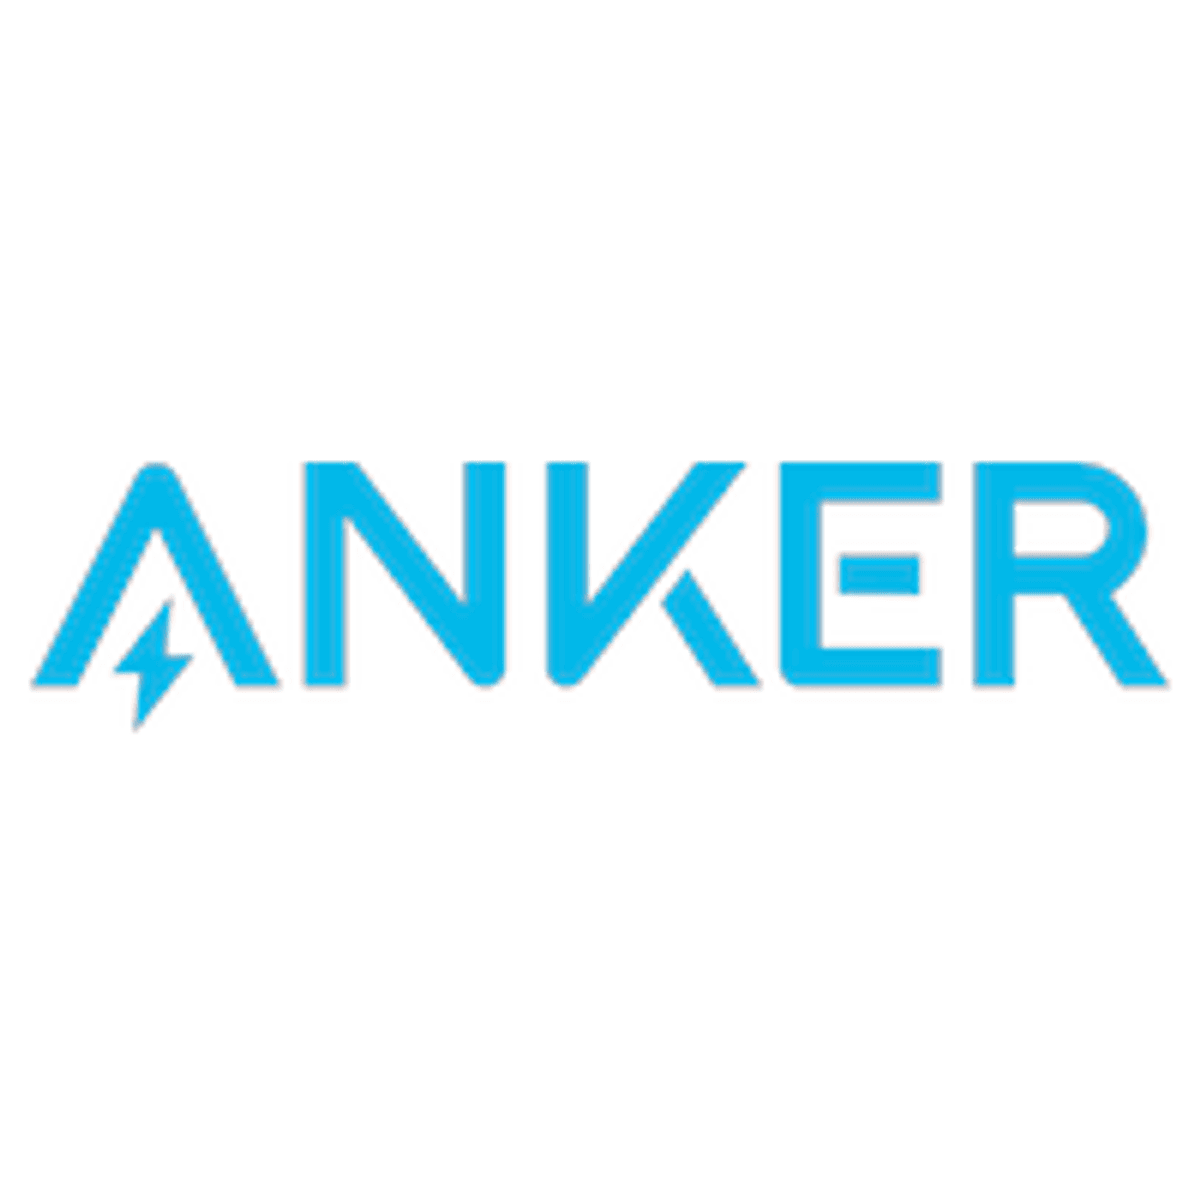 Terugroepactie voor powerbank Anker na brand image